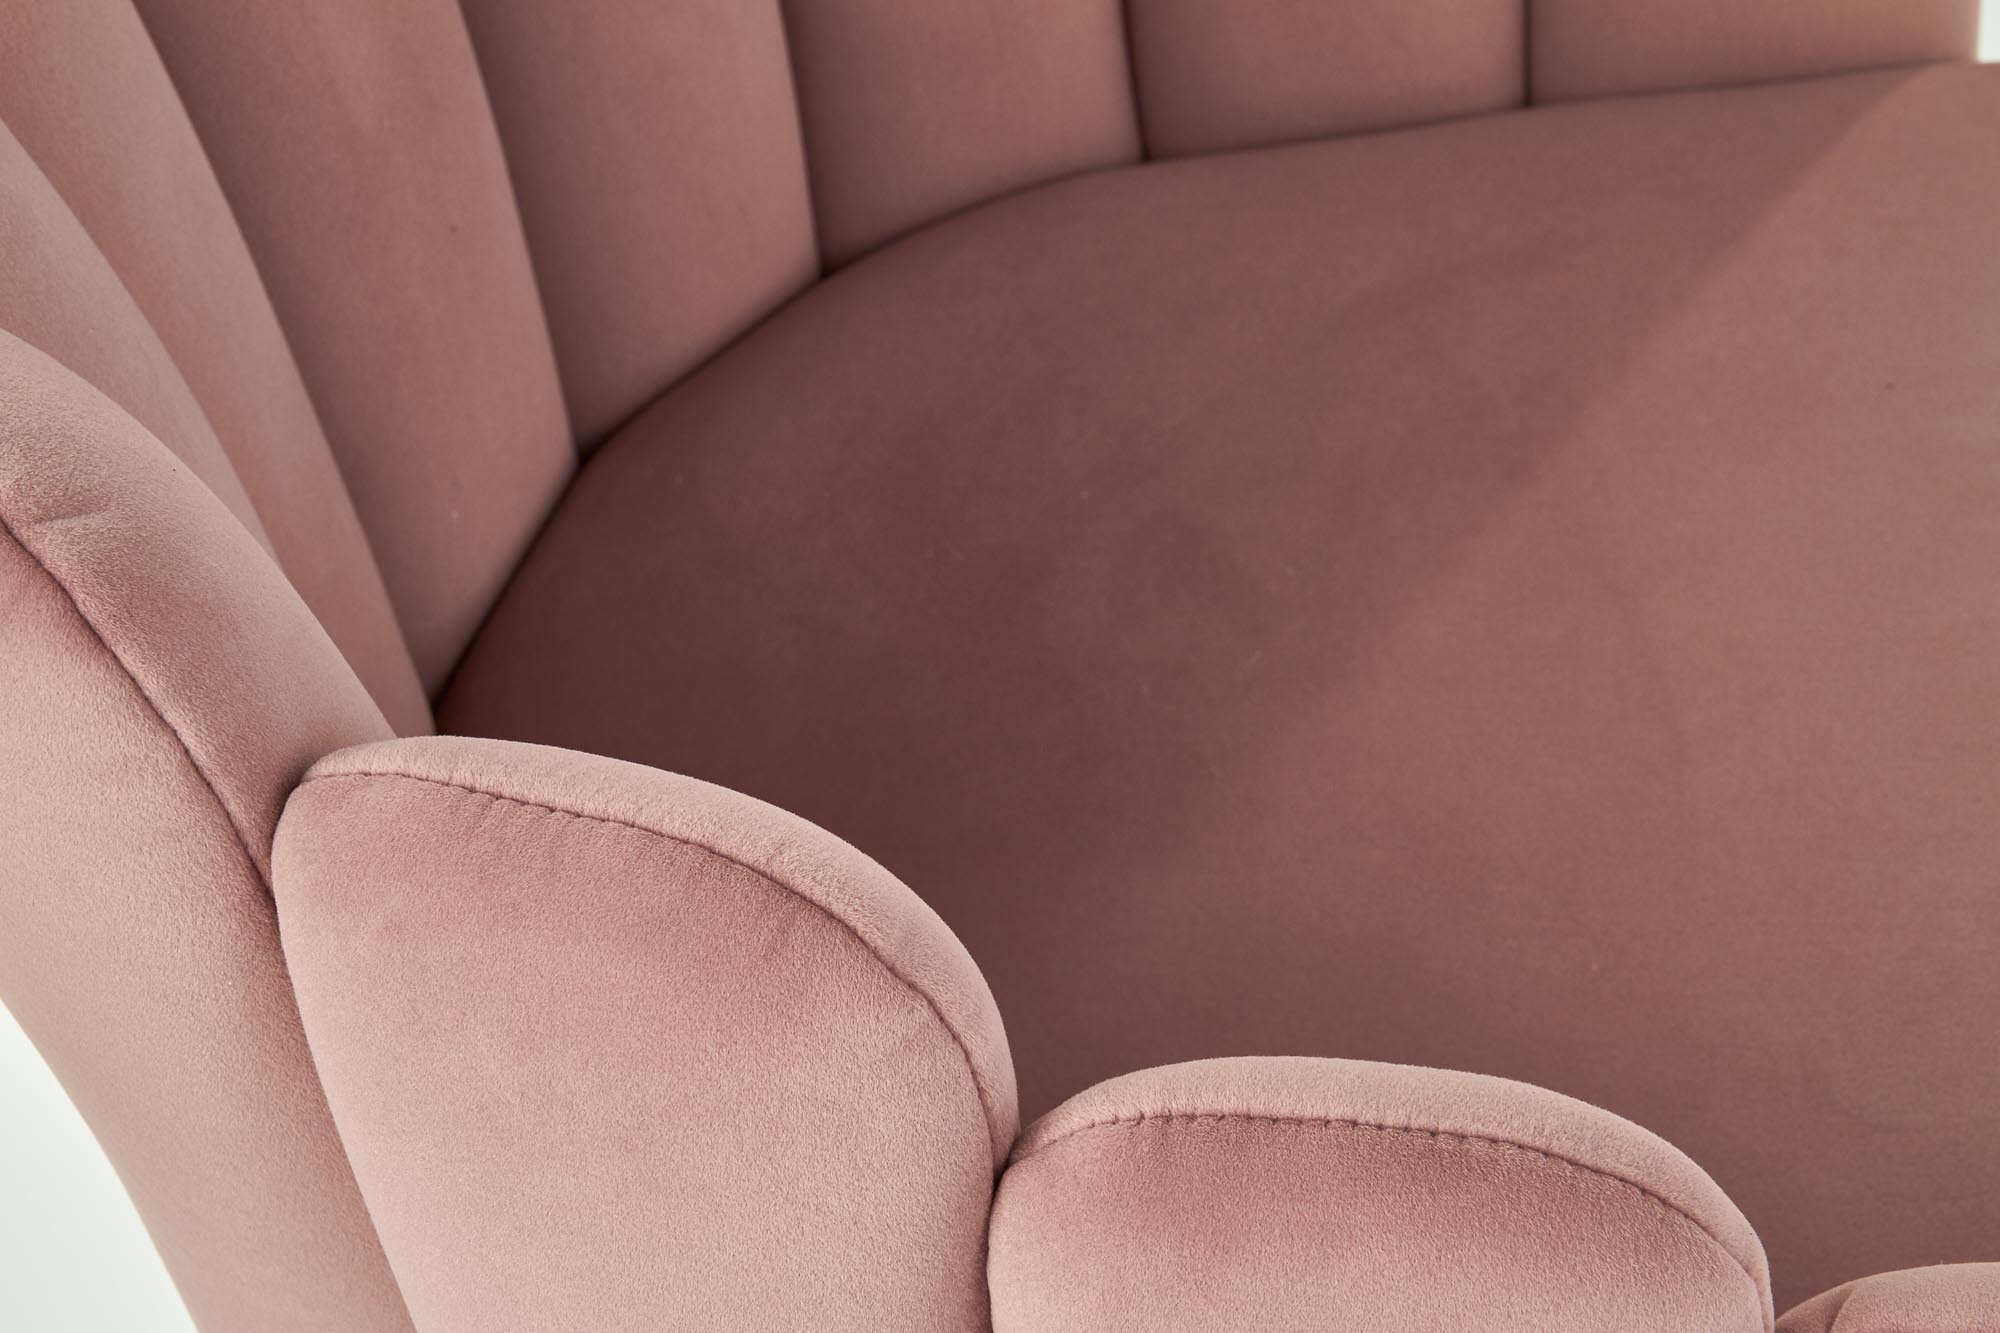 K410 szék - rózsaszín bársony Židle k410 - Růžová velvet